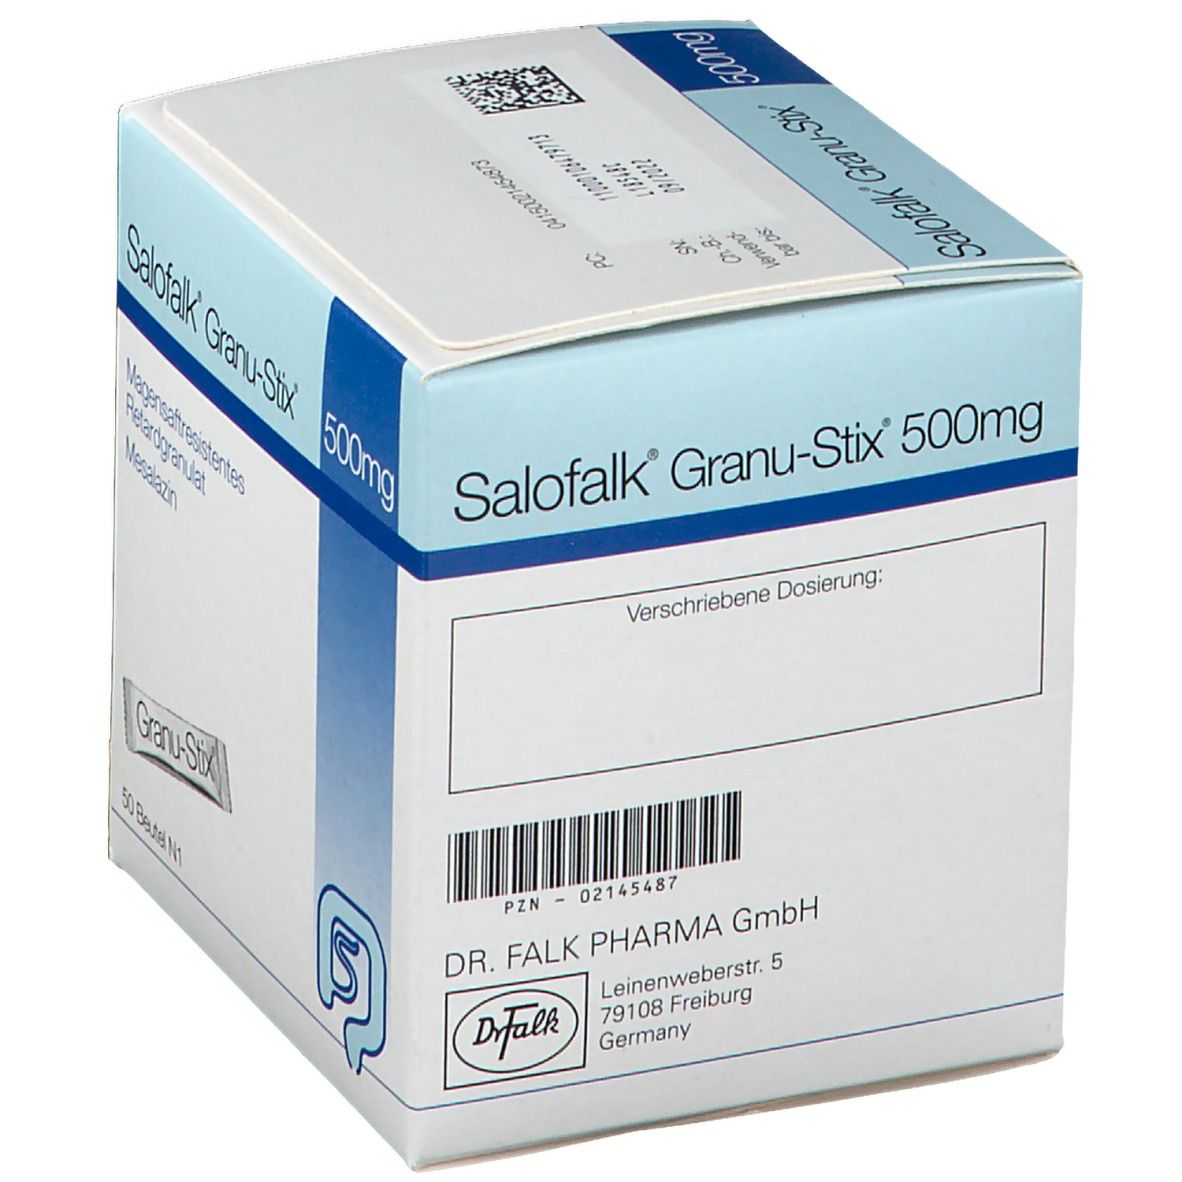 Salofalk® 500 mg Granu Stix